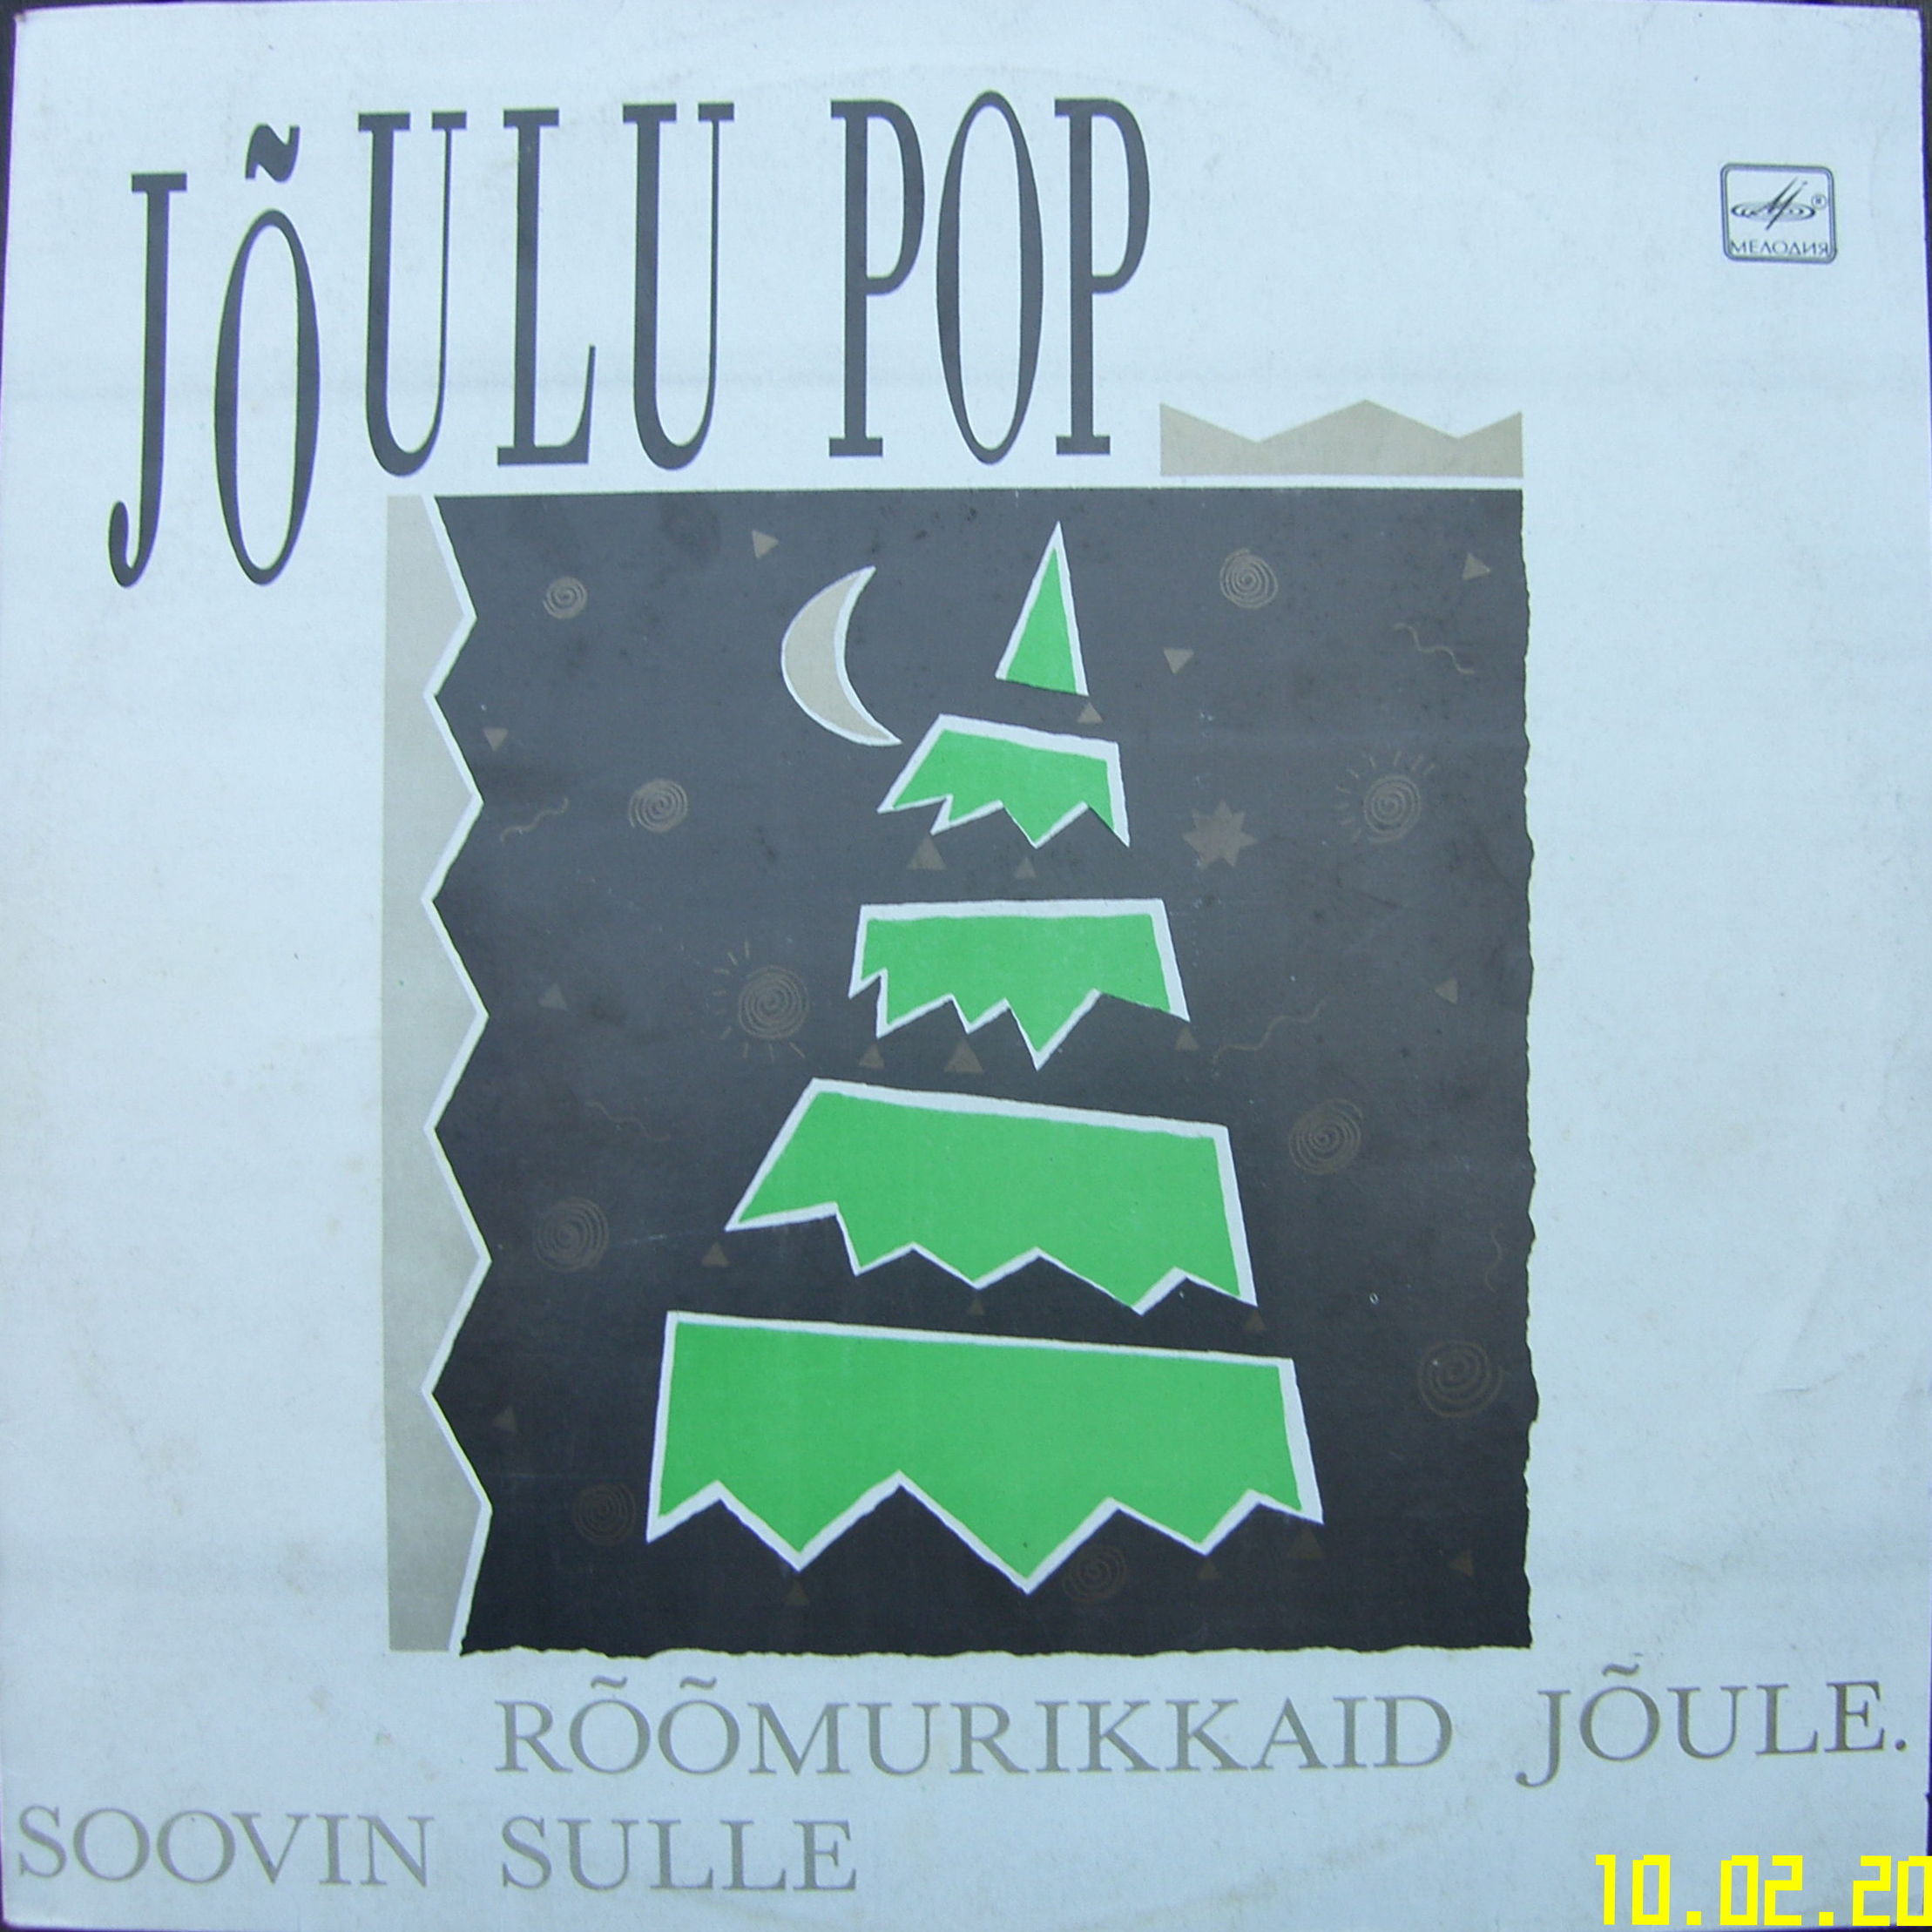 ЖЕЛАЮ ТЕБЕ СЧАСТЛИВОГО РОЖДЕСТВА / JOULU POP (на эстонском языке)